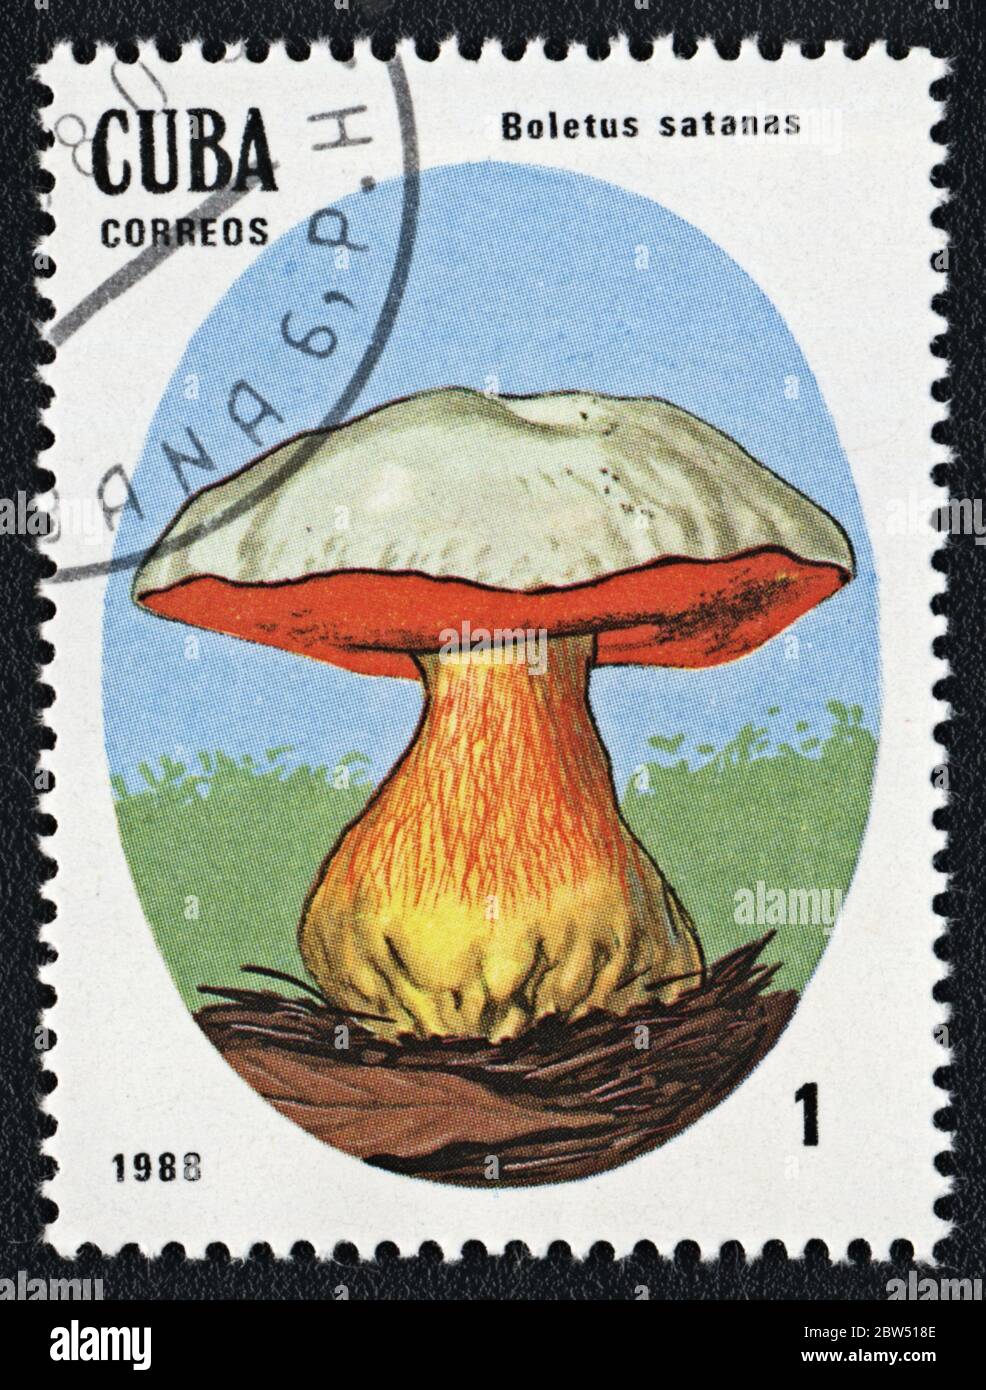 Boletus satanas hongo venenoso. Serie: Hongos incomestibles y venenosos. Sello postal Cuba 1988 Foto de stock